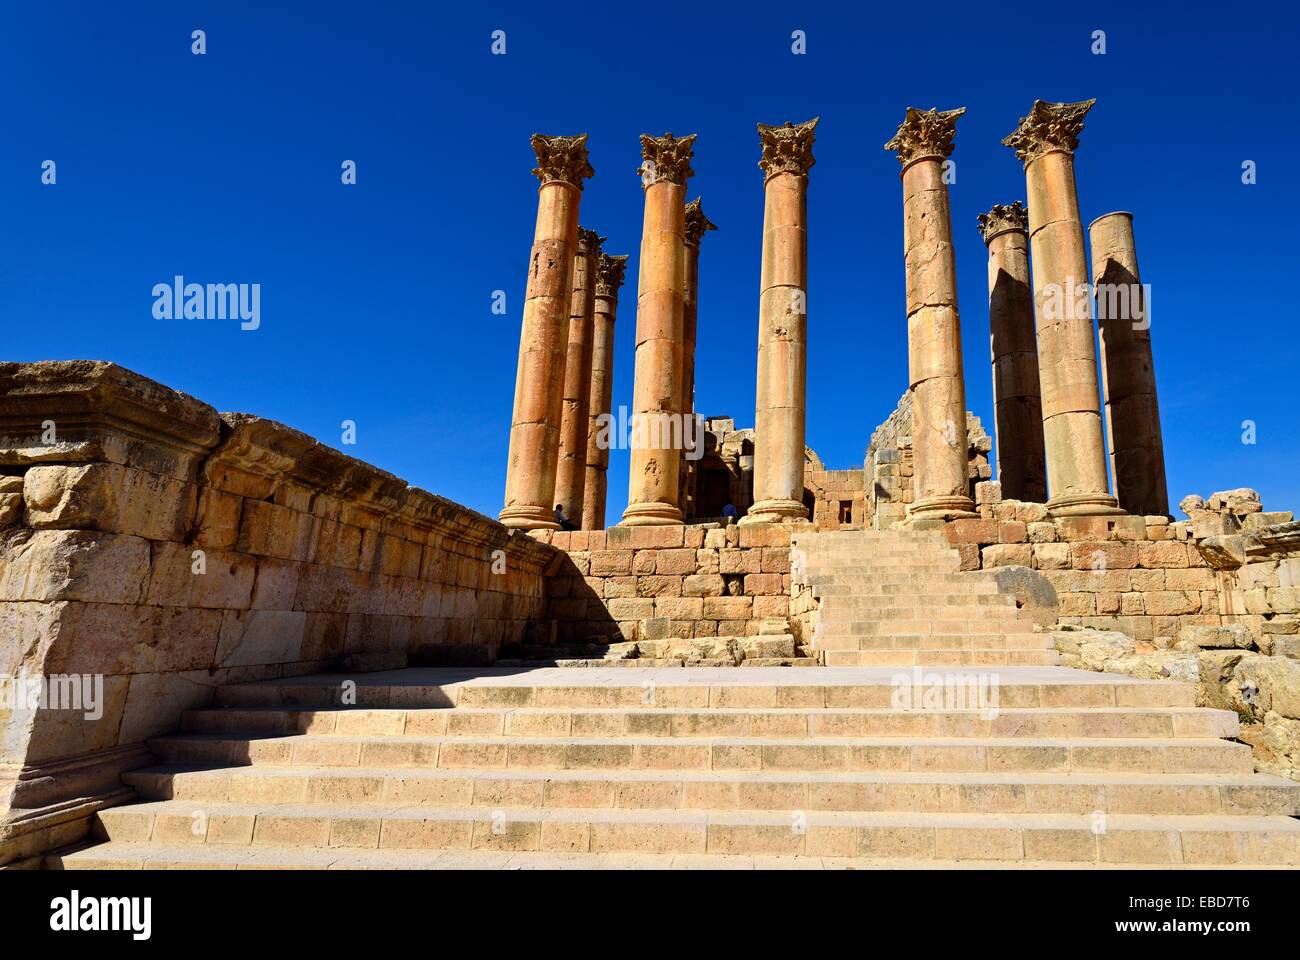 Antica storia antica antichità archeologia Artemis Asia costruire la città capitale della civiltà dell'immagine a colori colonna giorni dominano Foto Stock